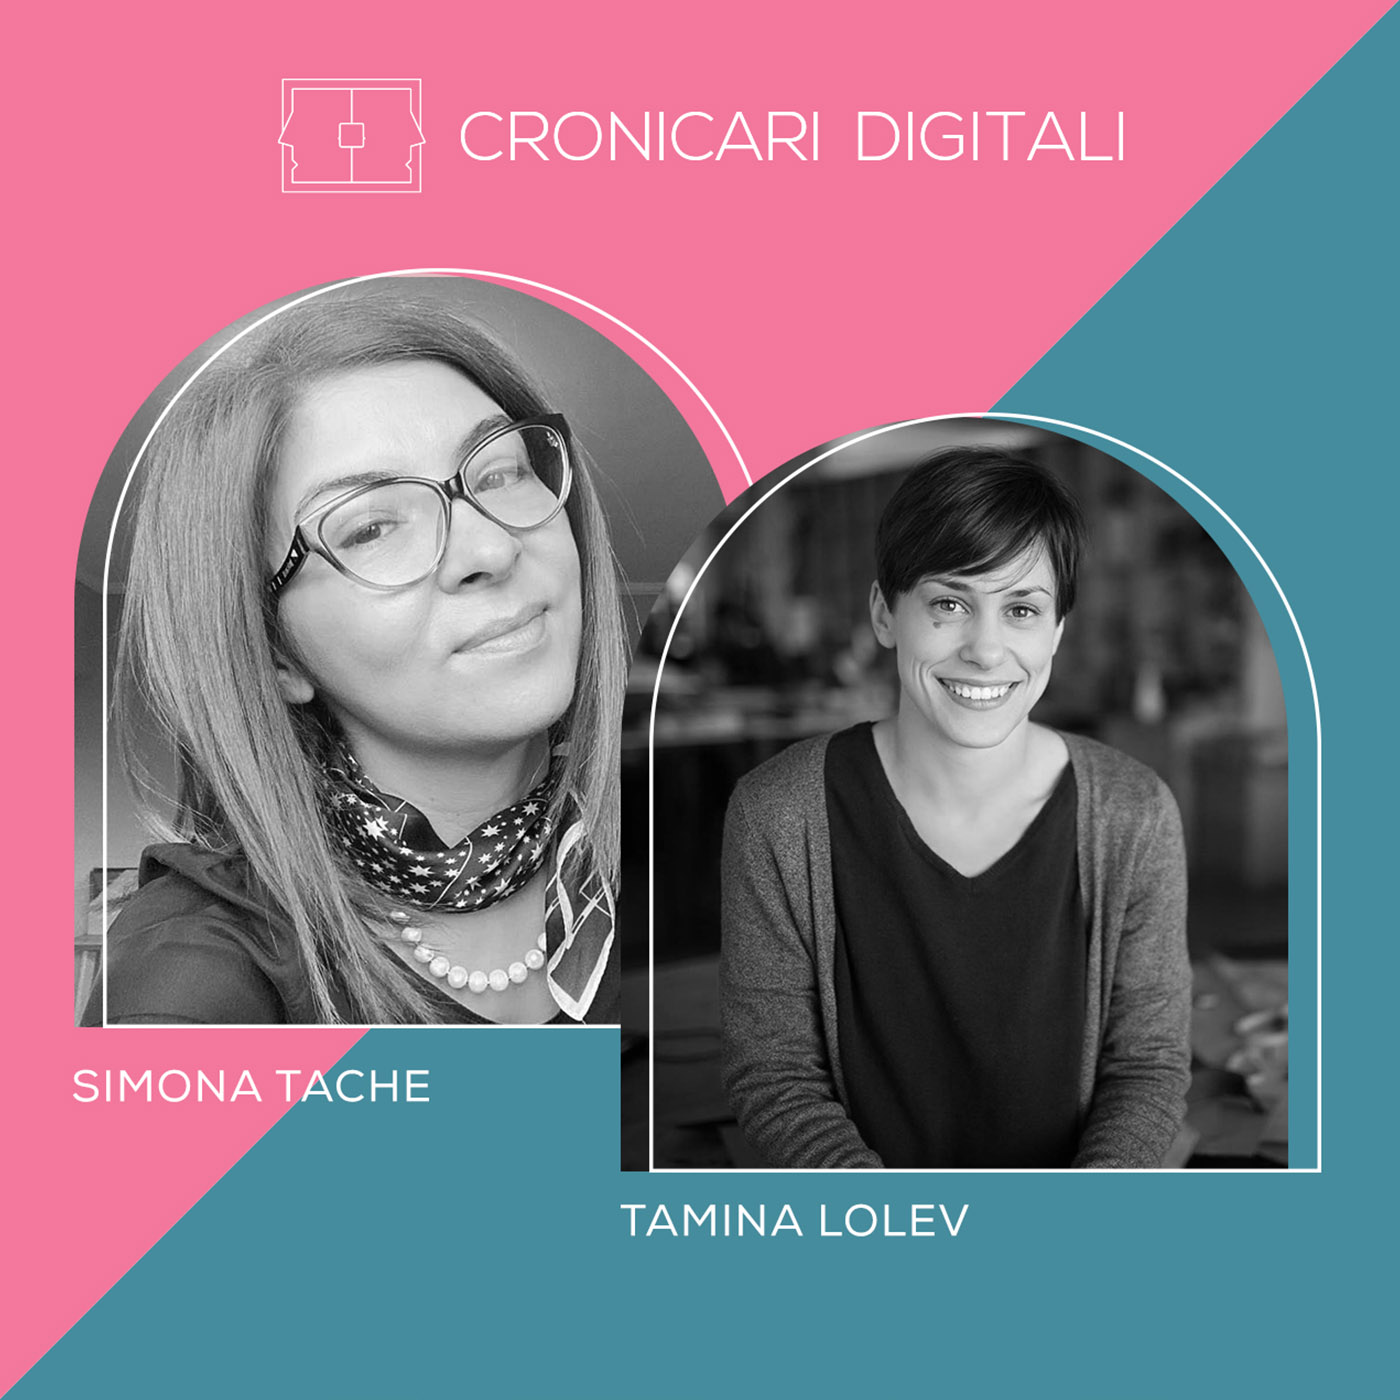 #cronicaridigitali S8 SIMONA TACHE: despre fericire, în toate formele ei. Arh. TAMINA LOLEV: povestea primului makerspace din România